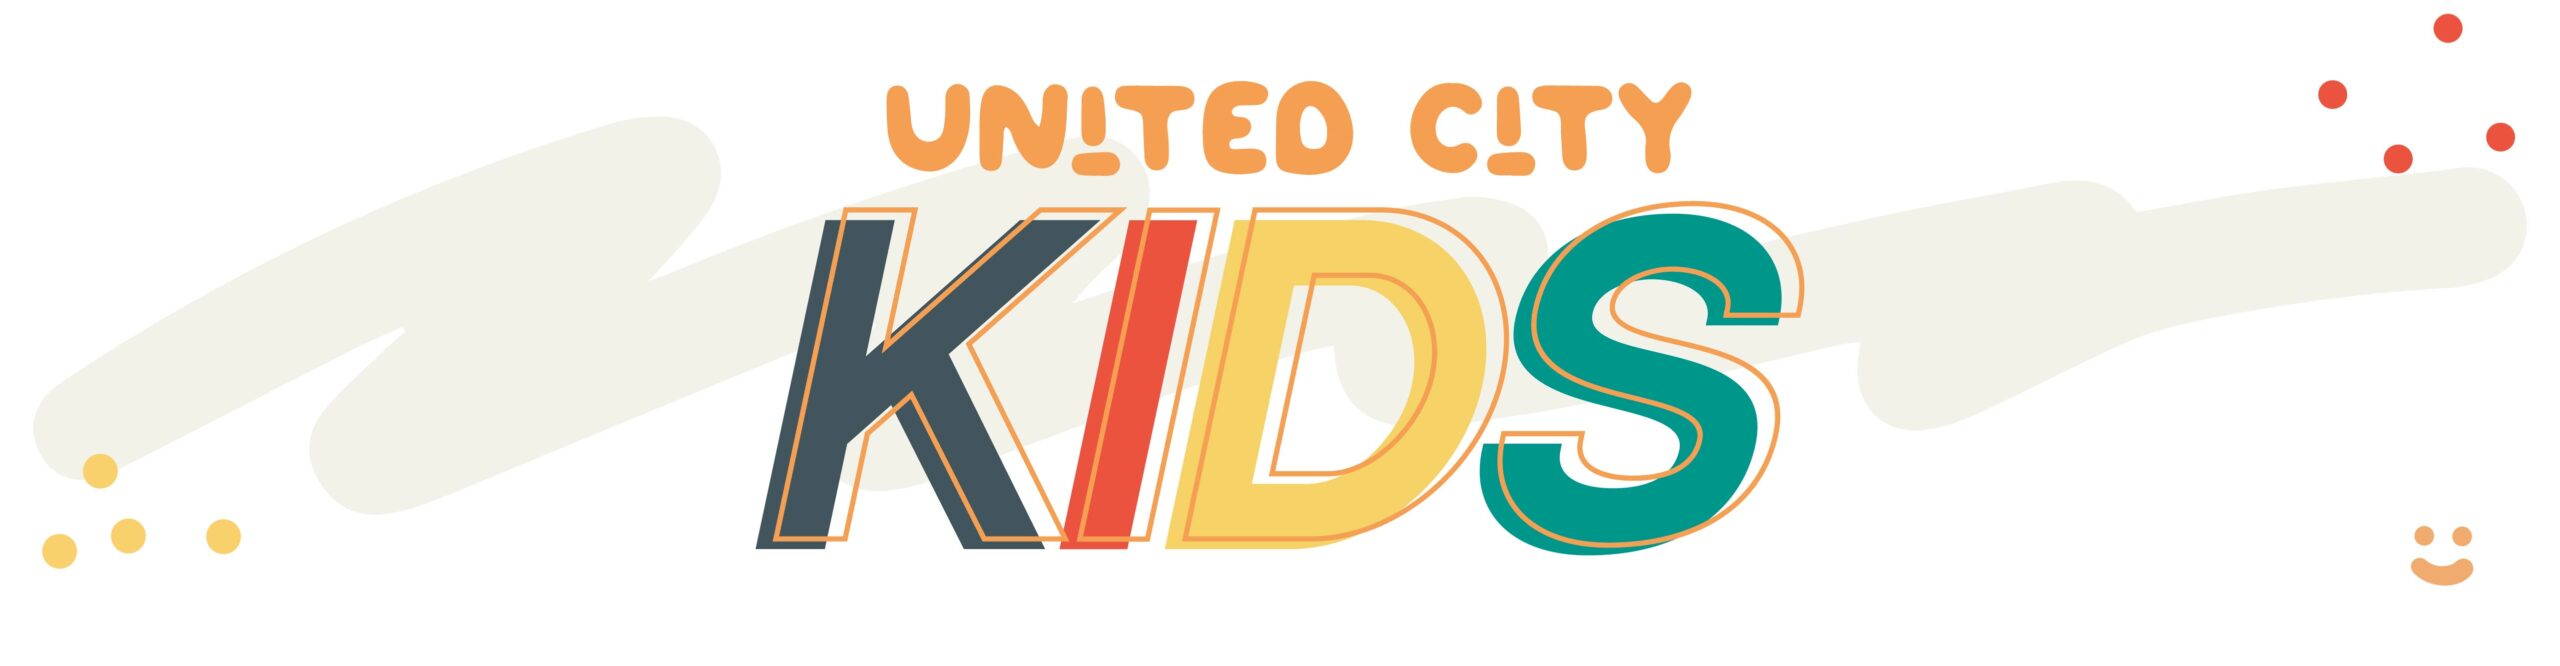 United City Kids banner logo